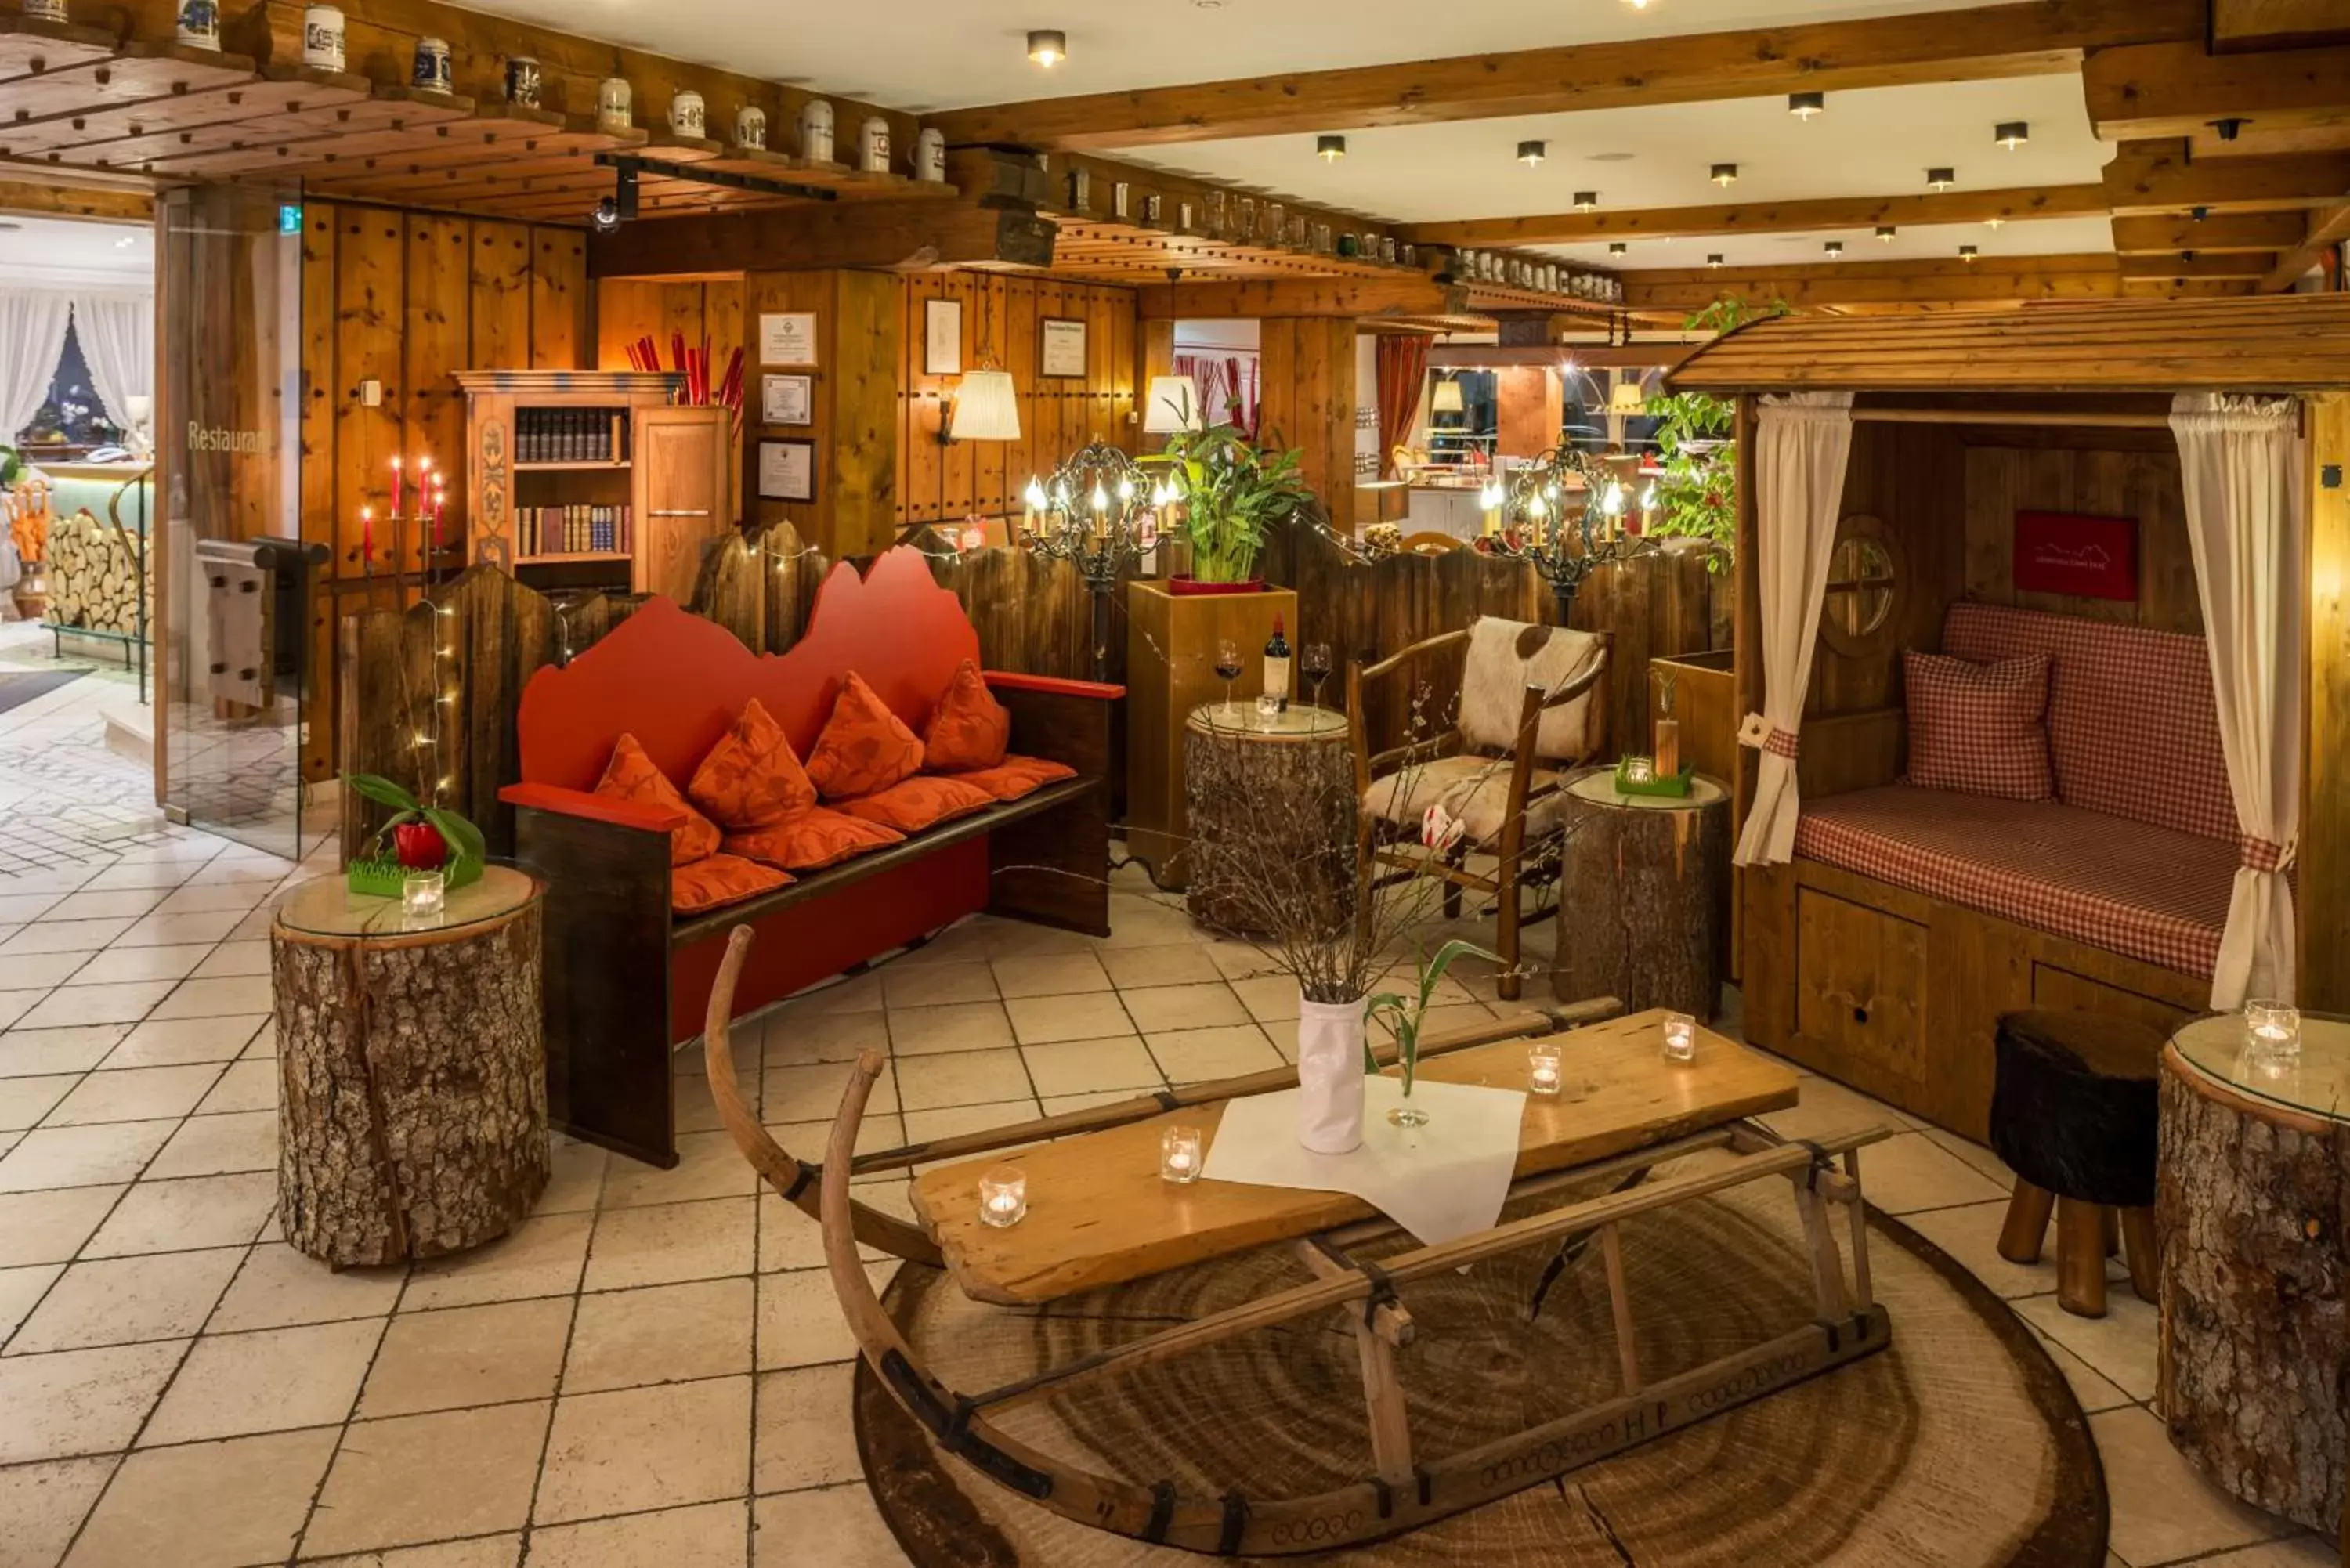 Lobby or reception, Restaurant/Places to Eat in Hotel Rheinischer Hof